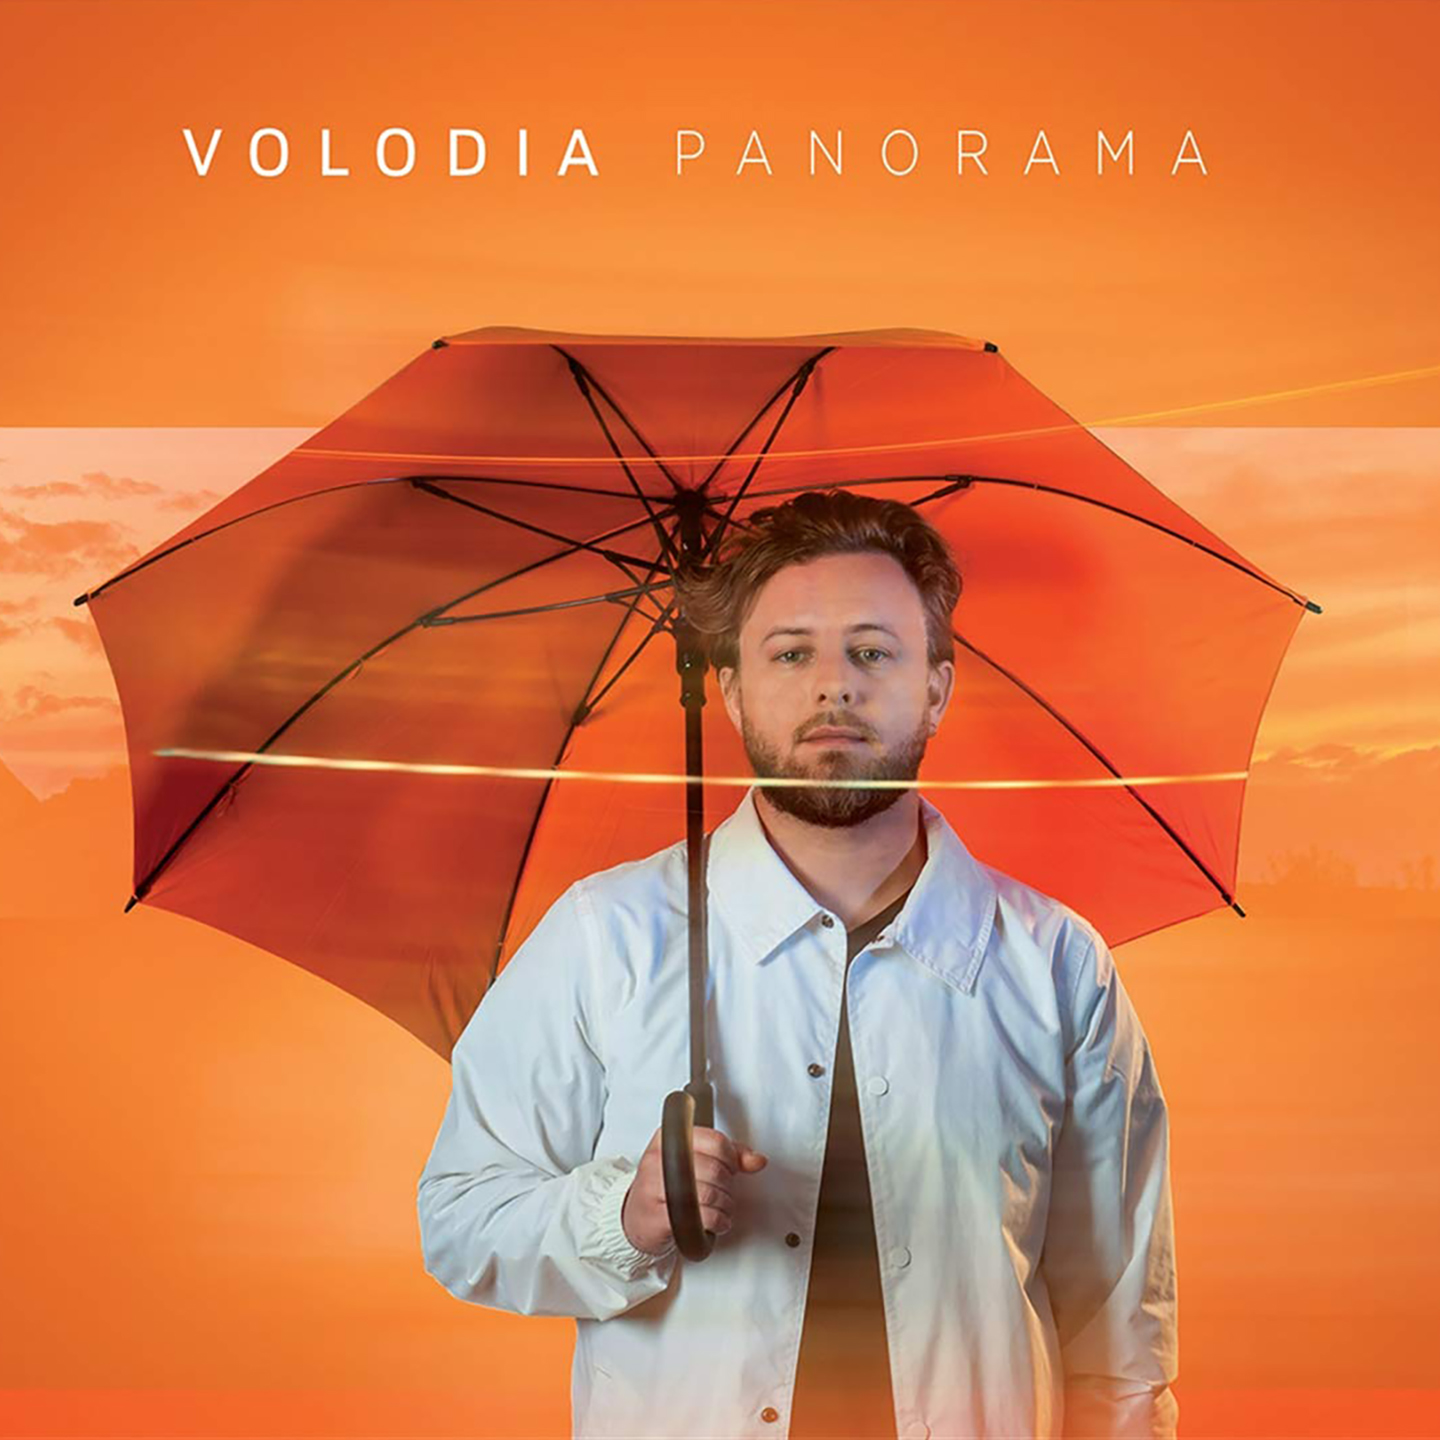 Cover de l'album de Volodia - Panorama. Réalisé par Loseou